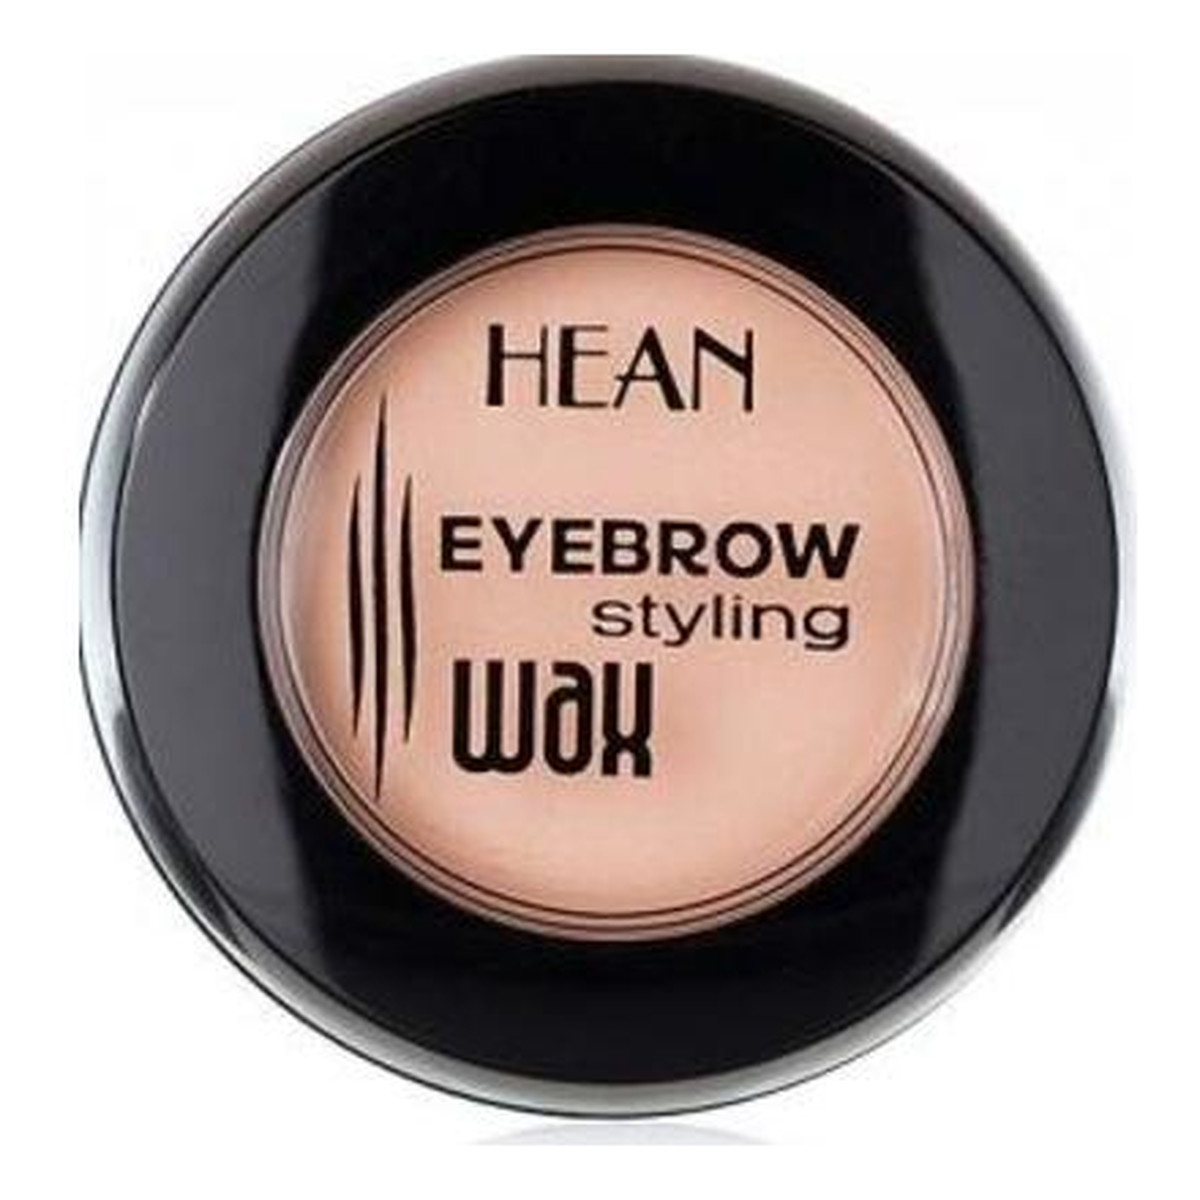 Hean Eyebrow Styling Wax Wosk Do Stylizacji Brwi